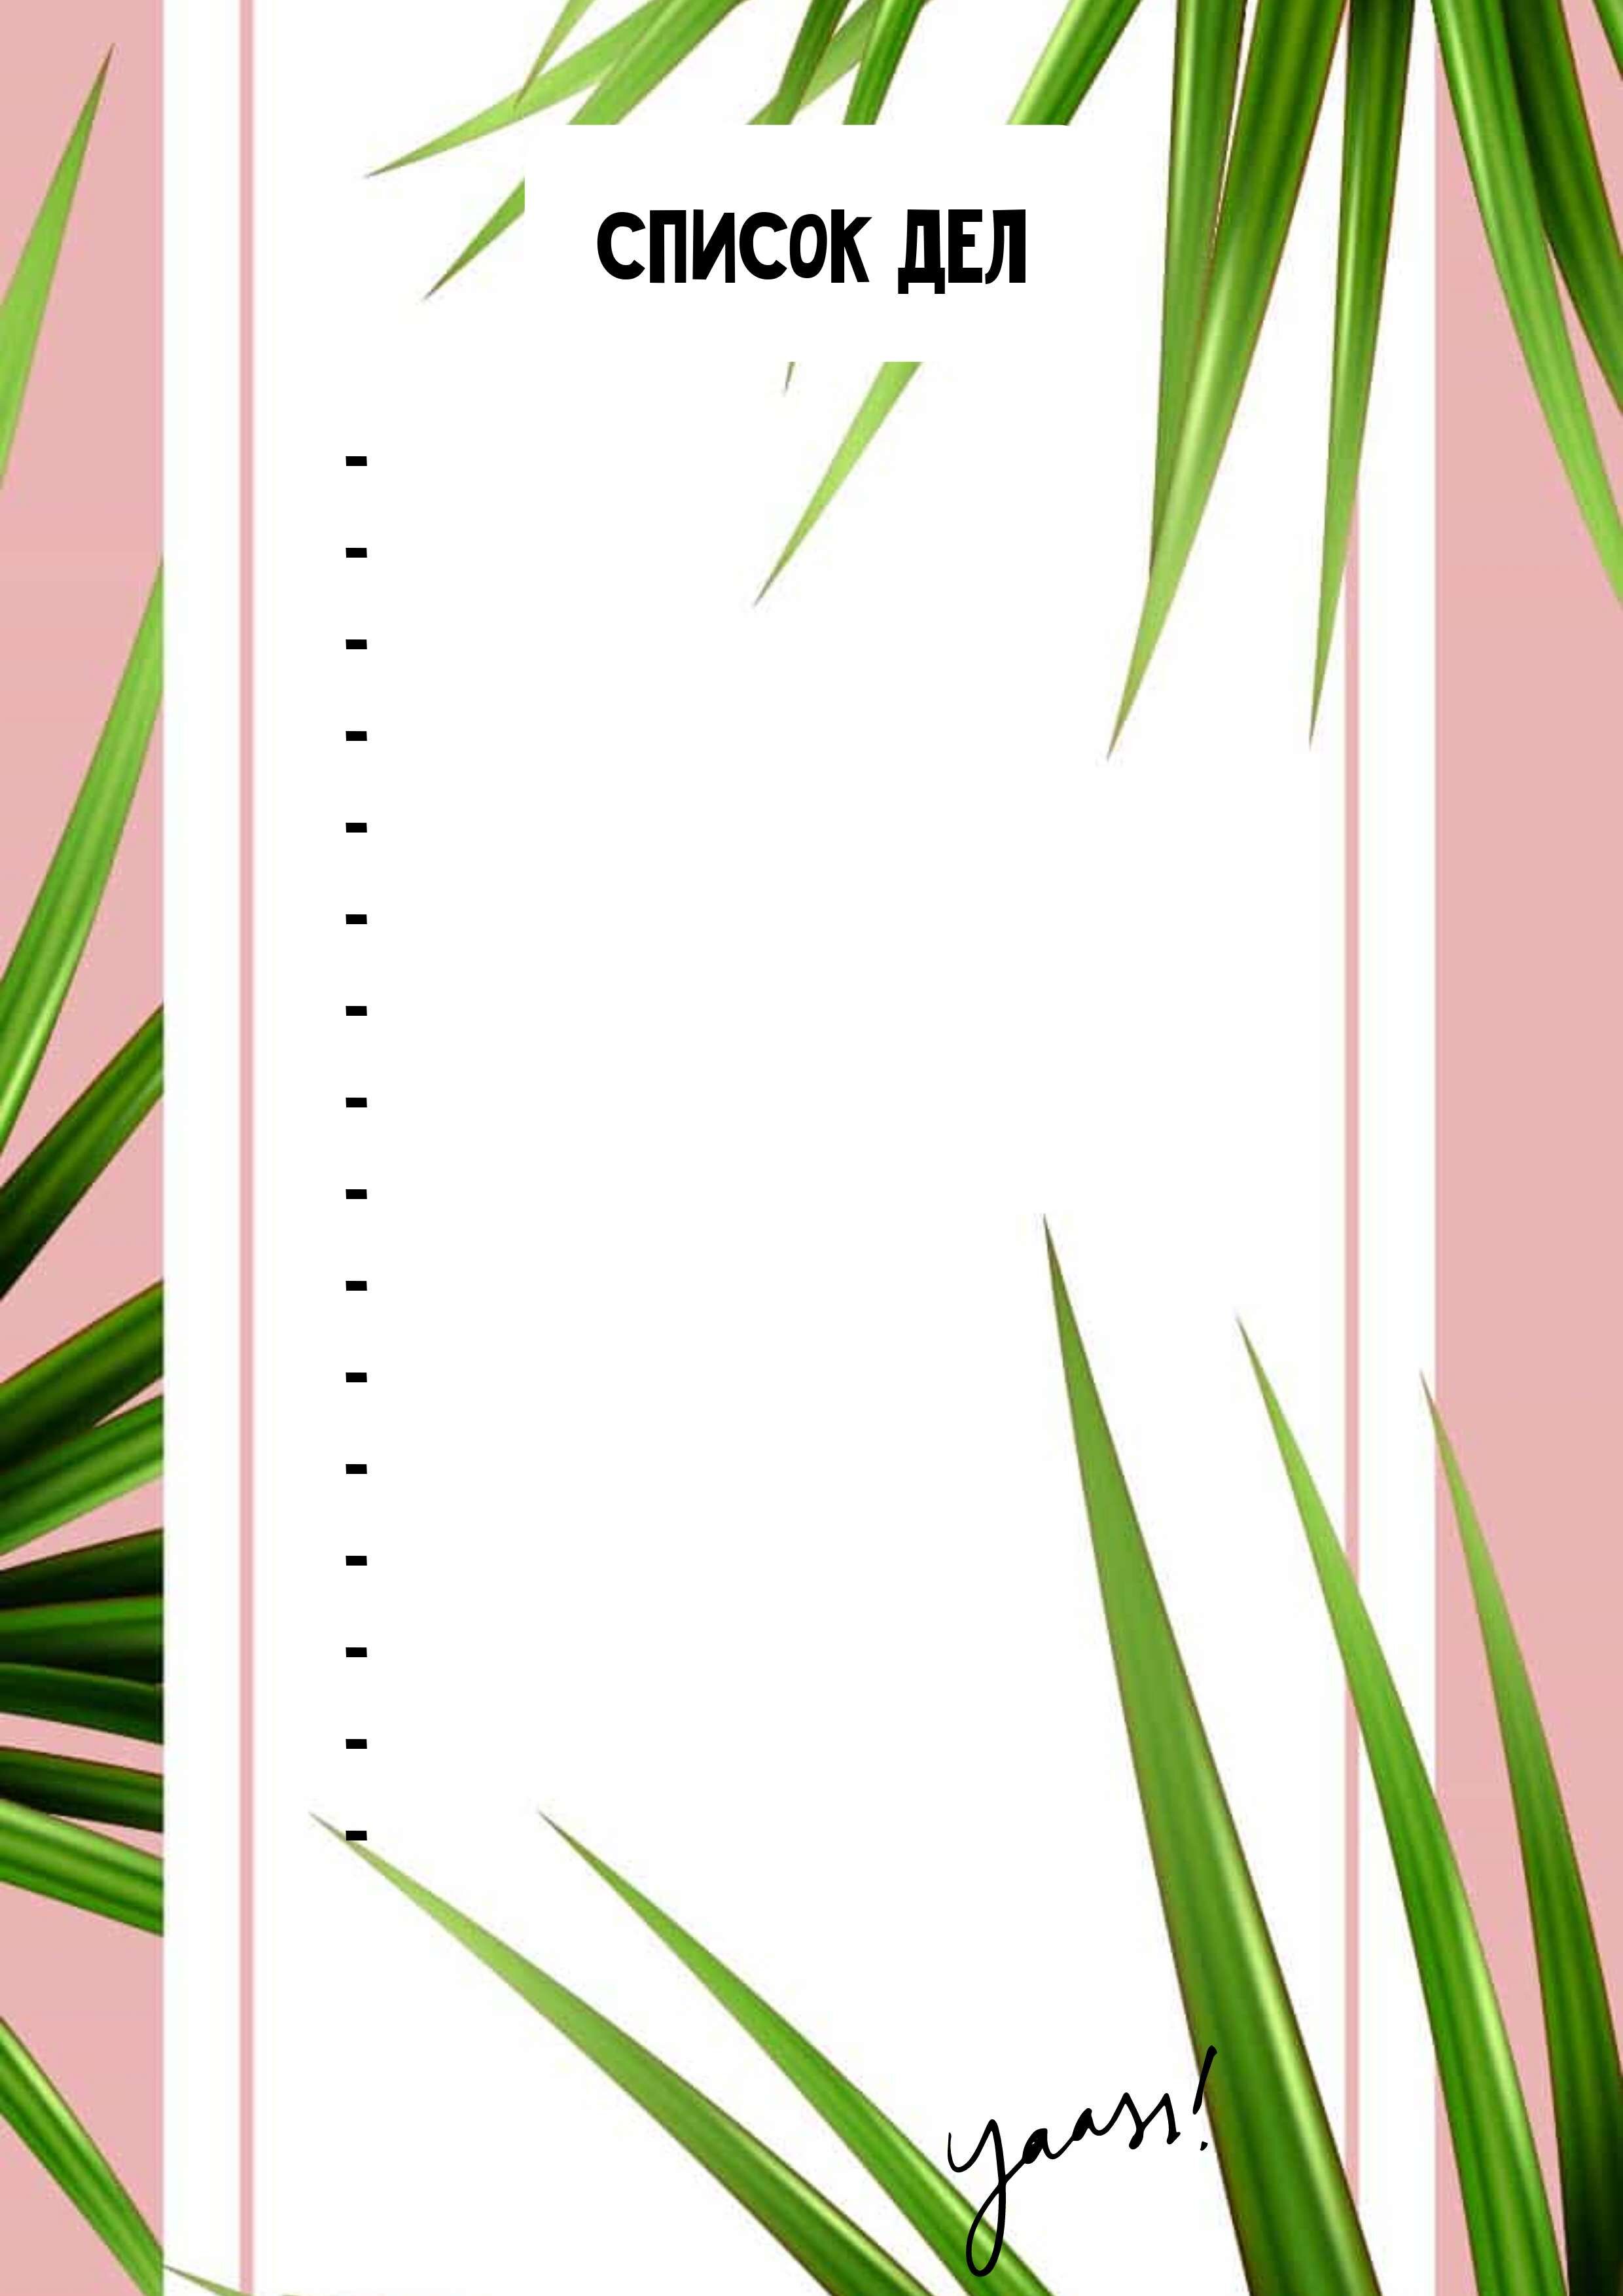 Тропический летний список дел на насыщенном розовом фоне с сочными зелеными листьями пальм